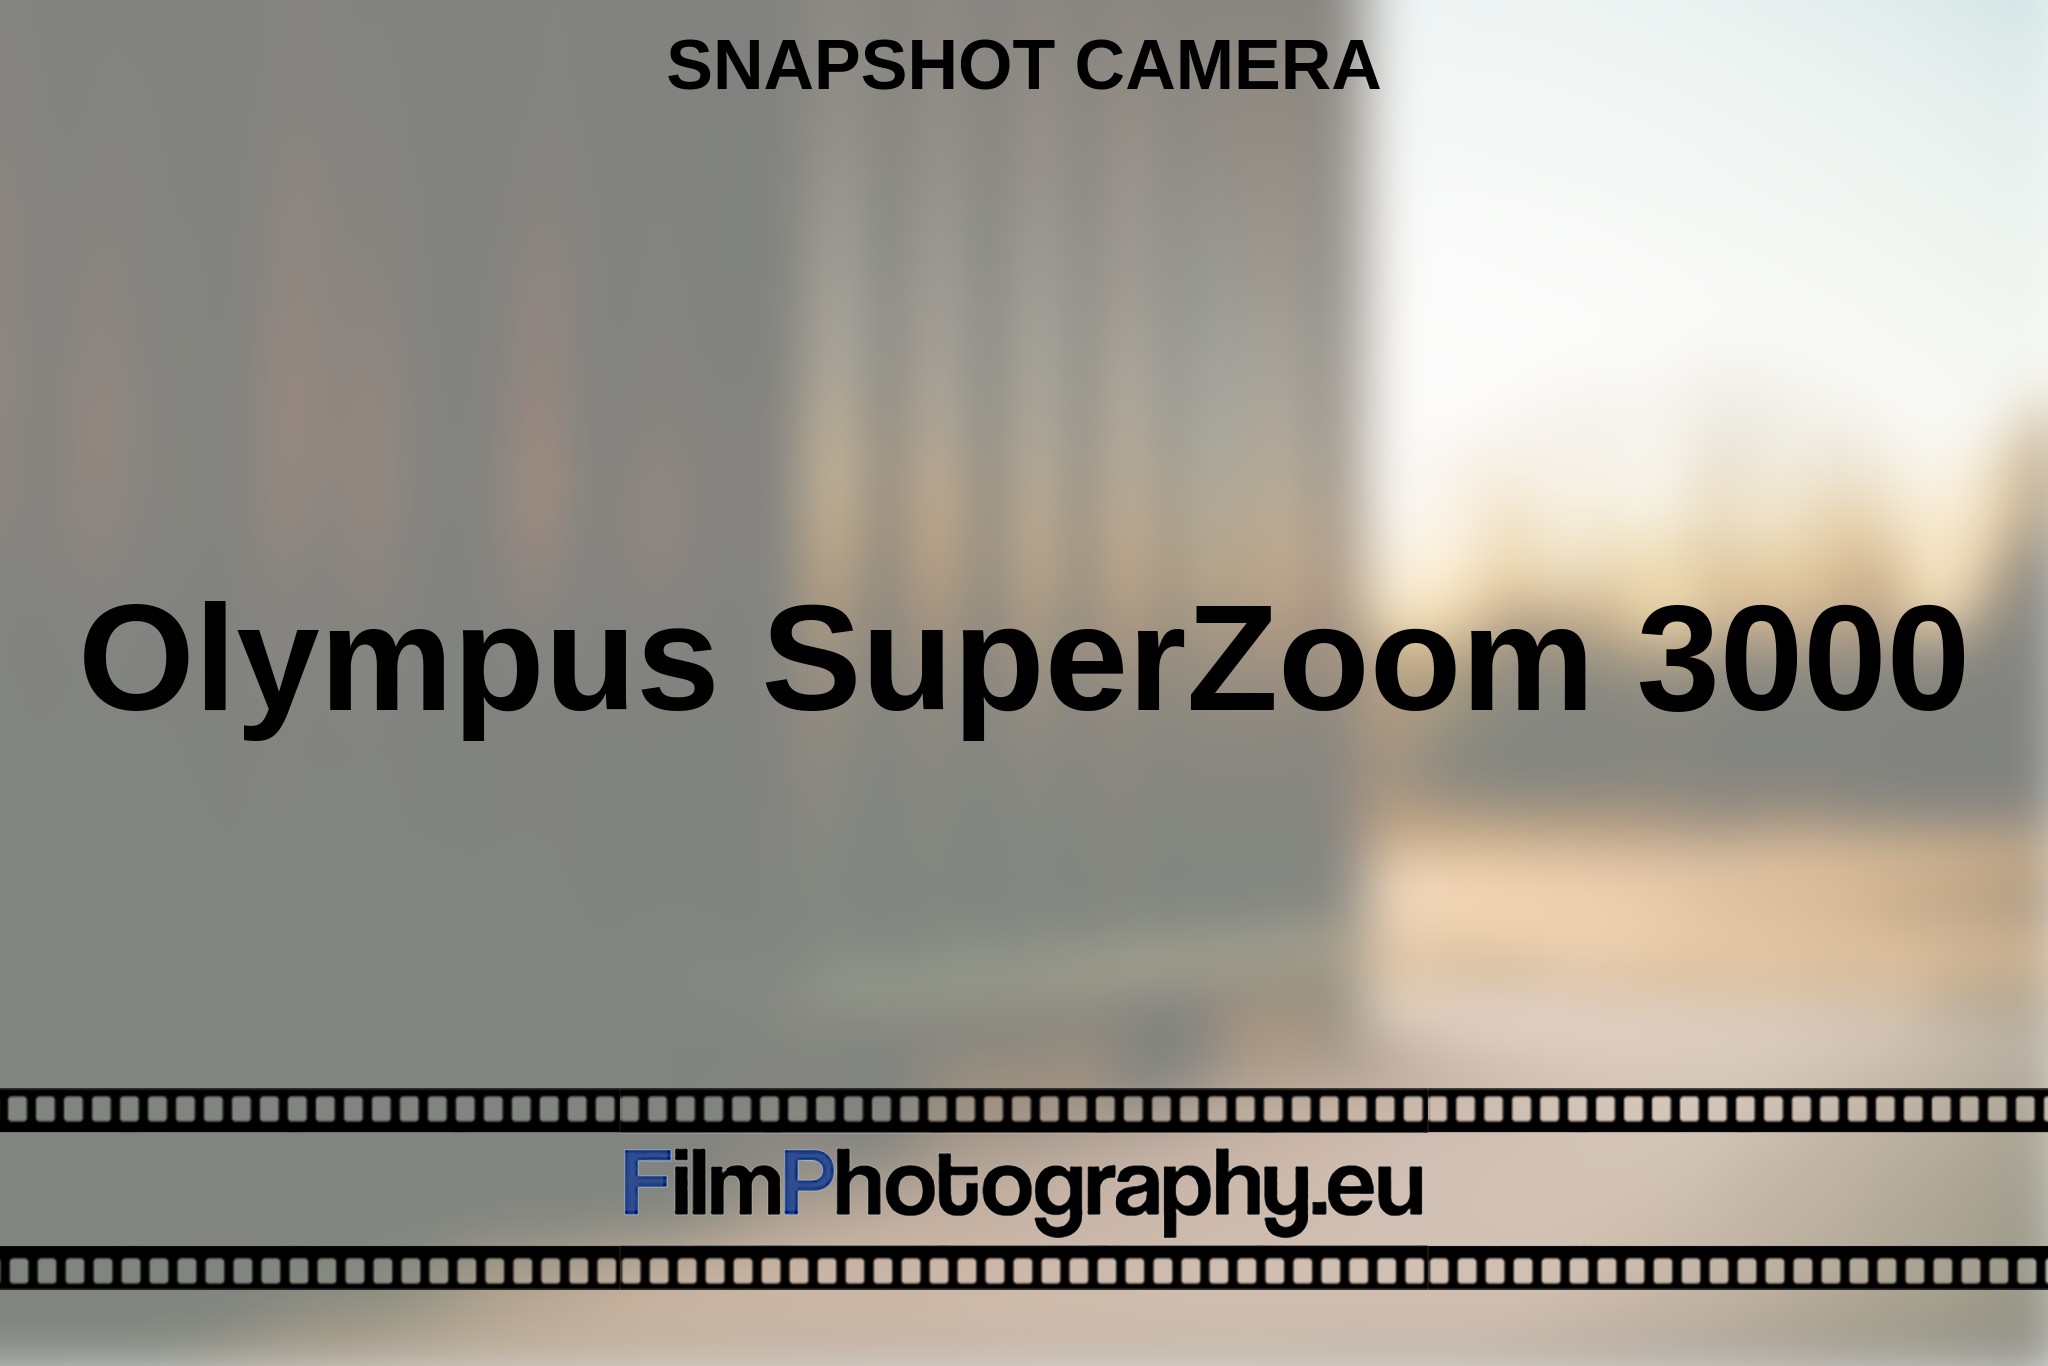 olympus-superzoom-3000-snapshot-camera-en-bnv.jpg